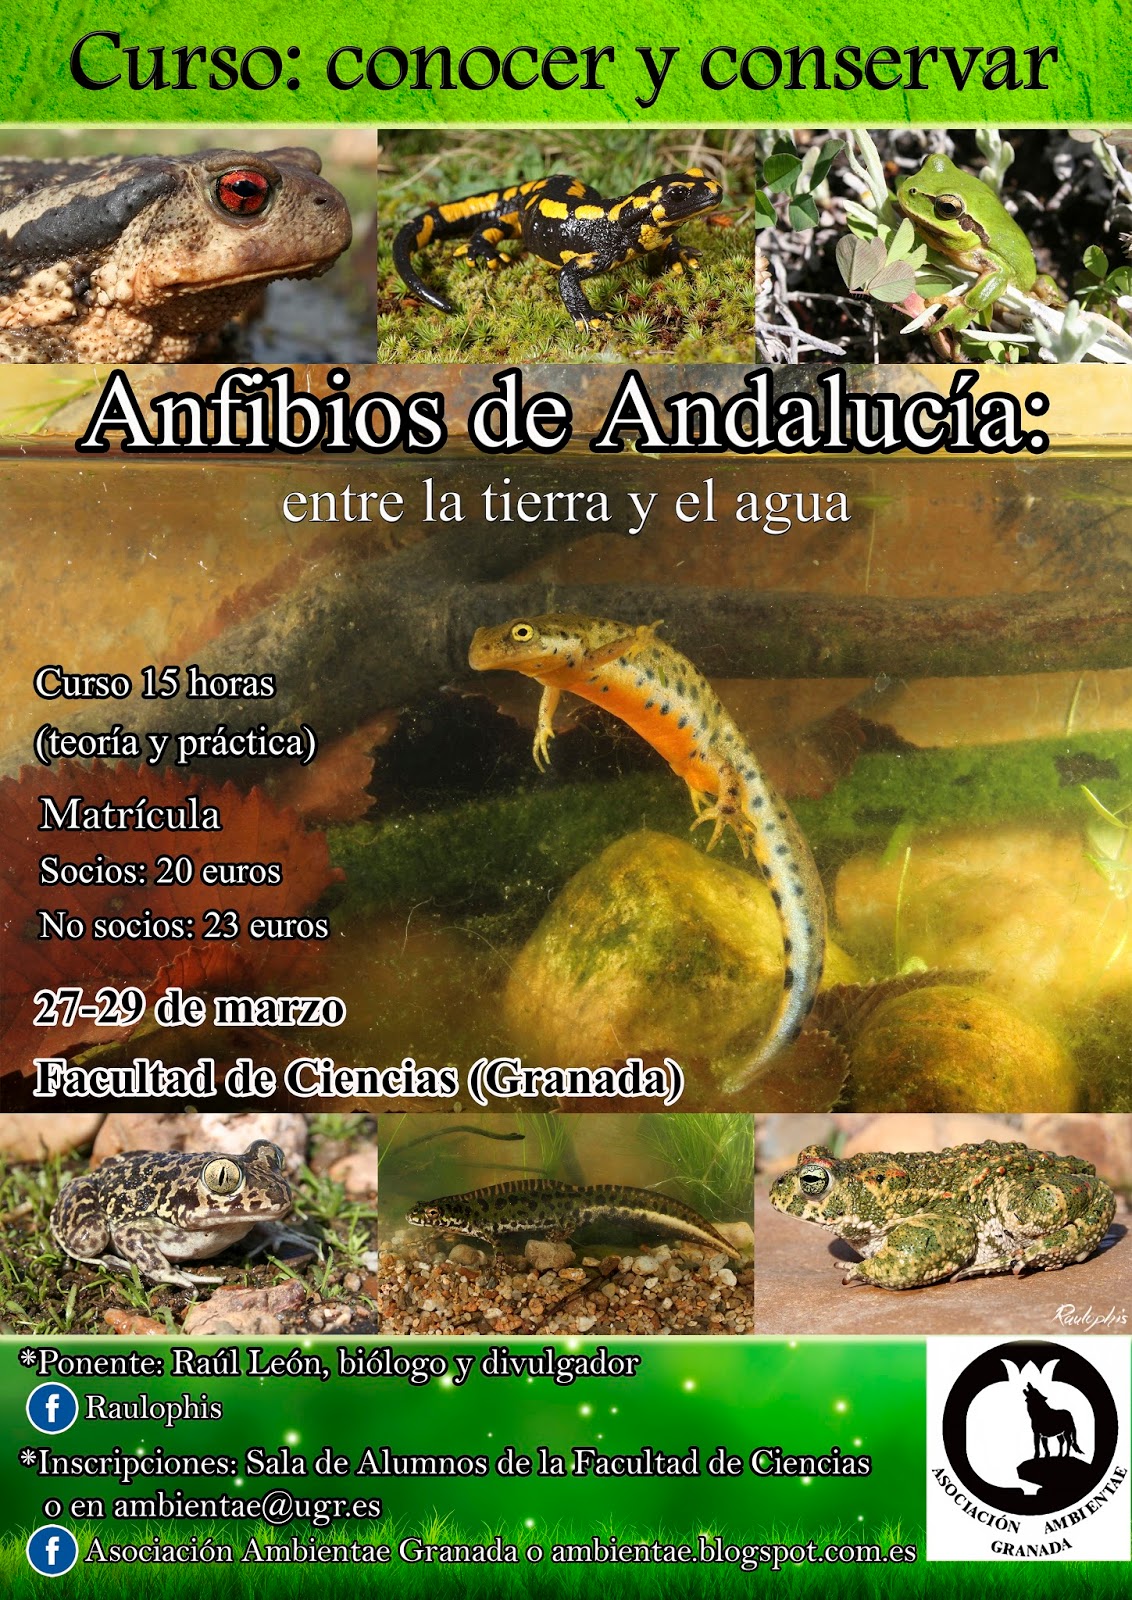 Curso "Conocer y conservar. Anfibios de Andalucía, entre la tierra y el agua" 